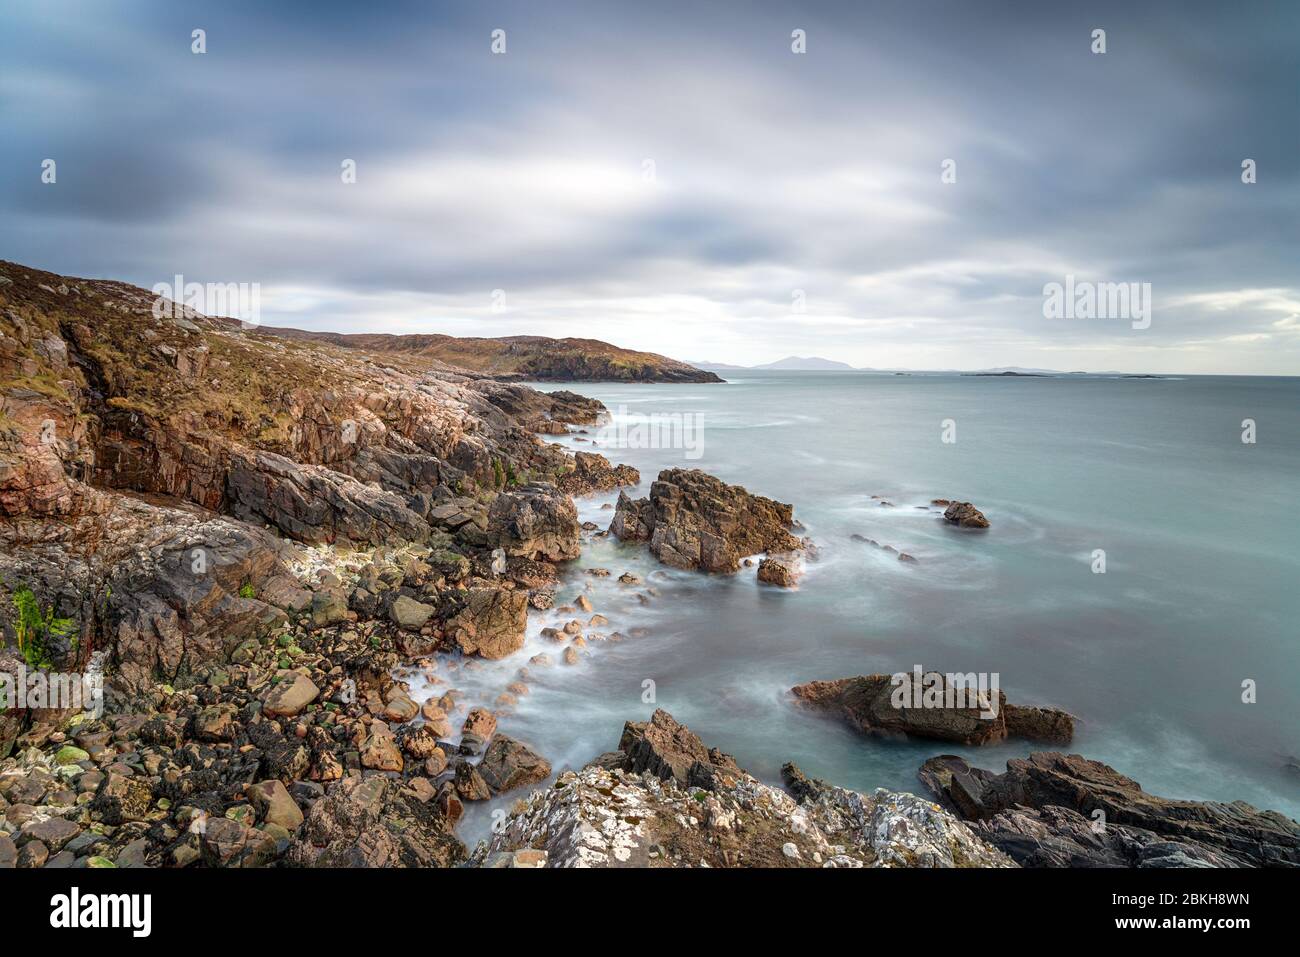 La côte sauvage et accidentée de Hushinish sur l'île de Harris dans les Hébrides extérieures d'Écosse Banque D'Images